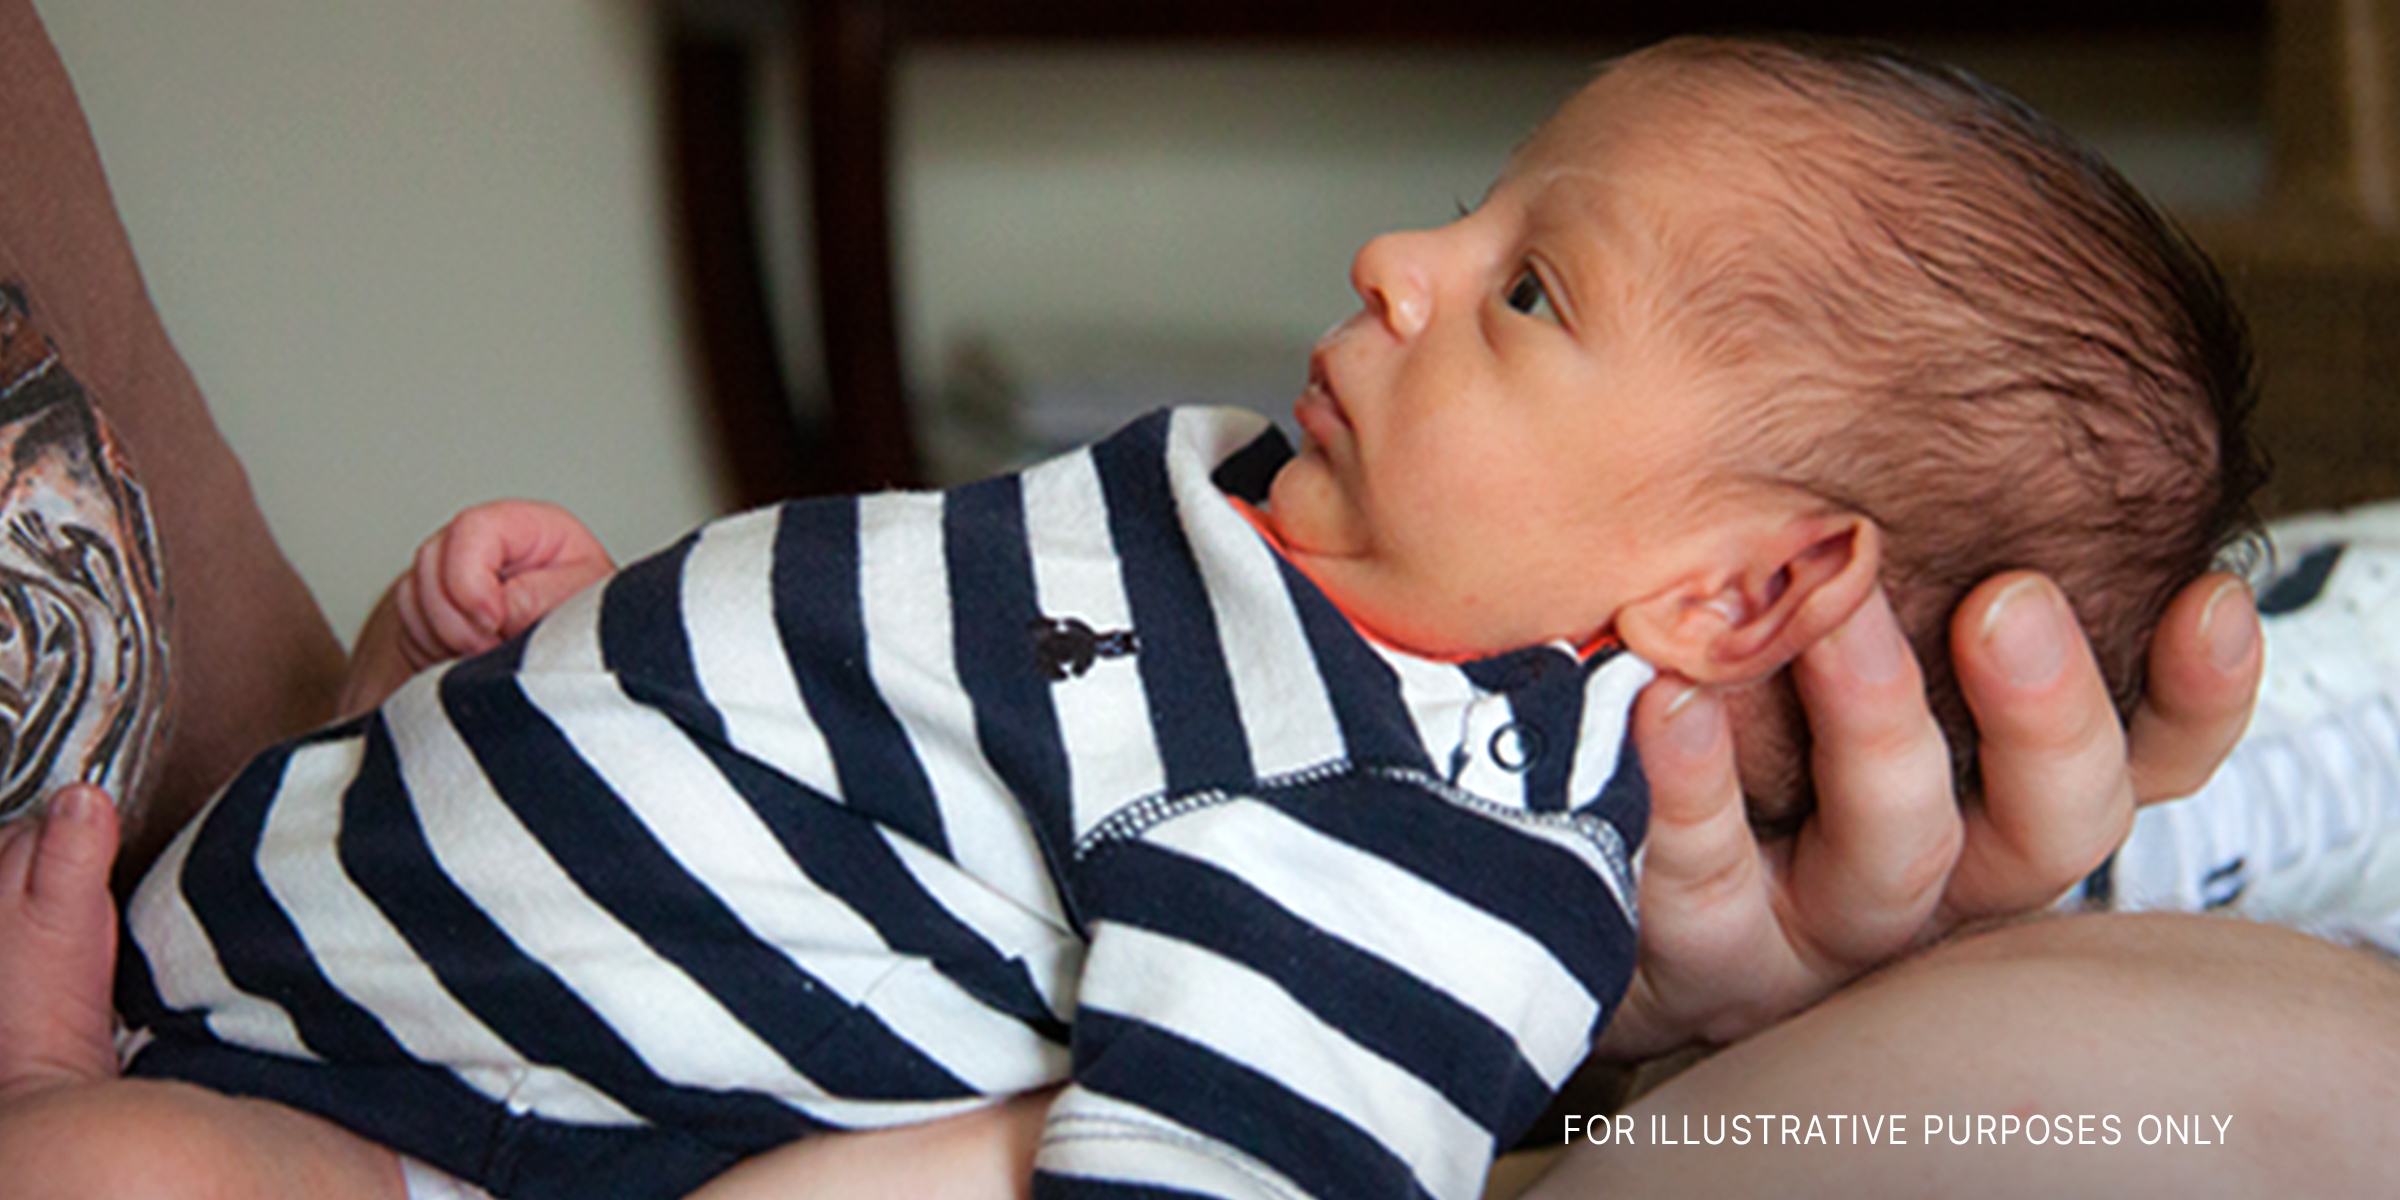 Ein Neugeborenes | Quelle: flickr.com/mnchilemom